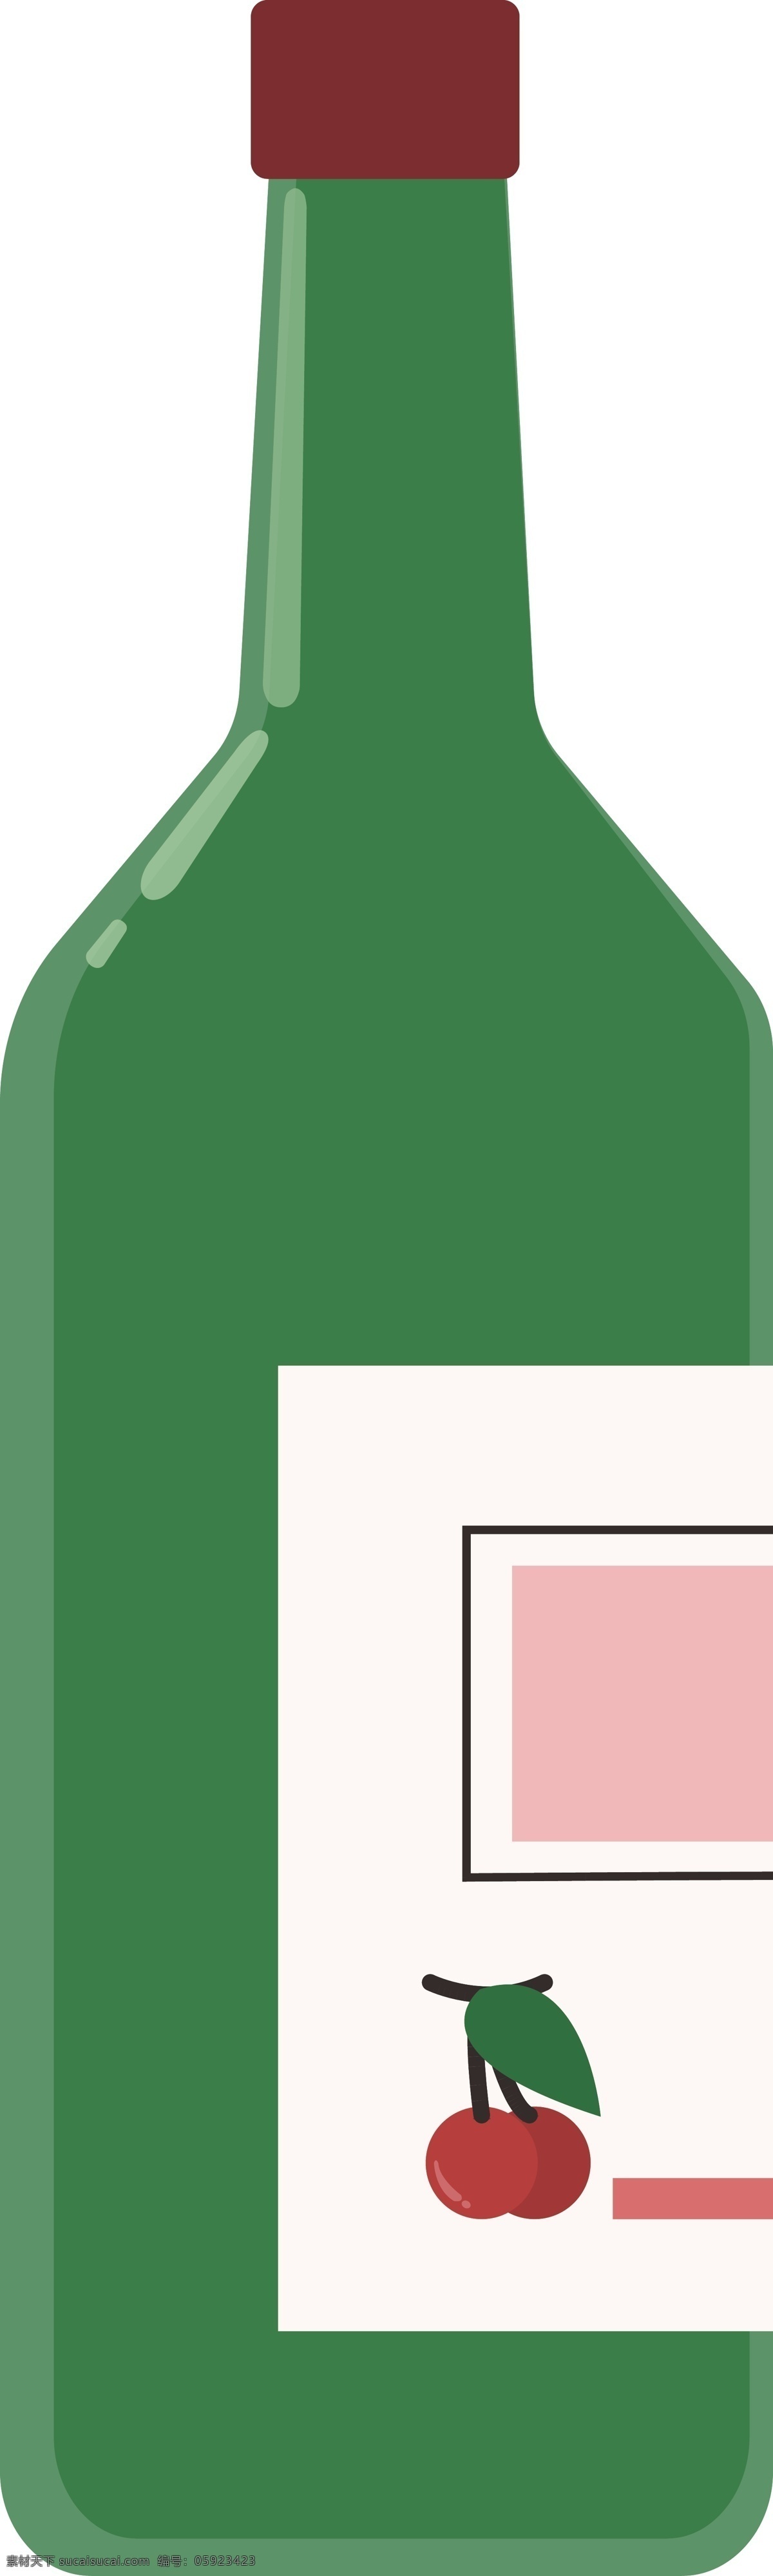 酒瓶 图标 元素 模版 樱桃 图标设计 绿色